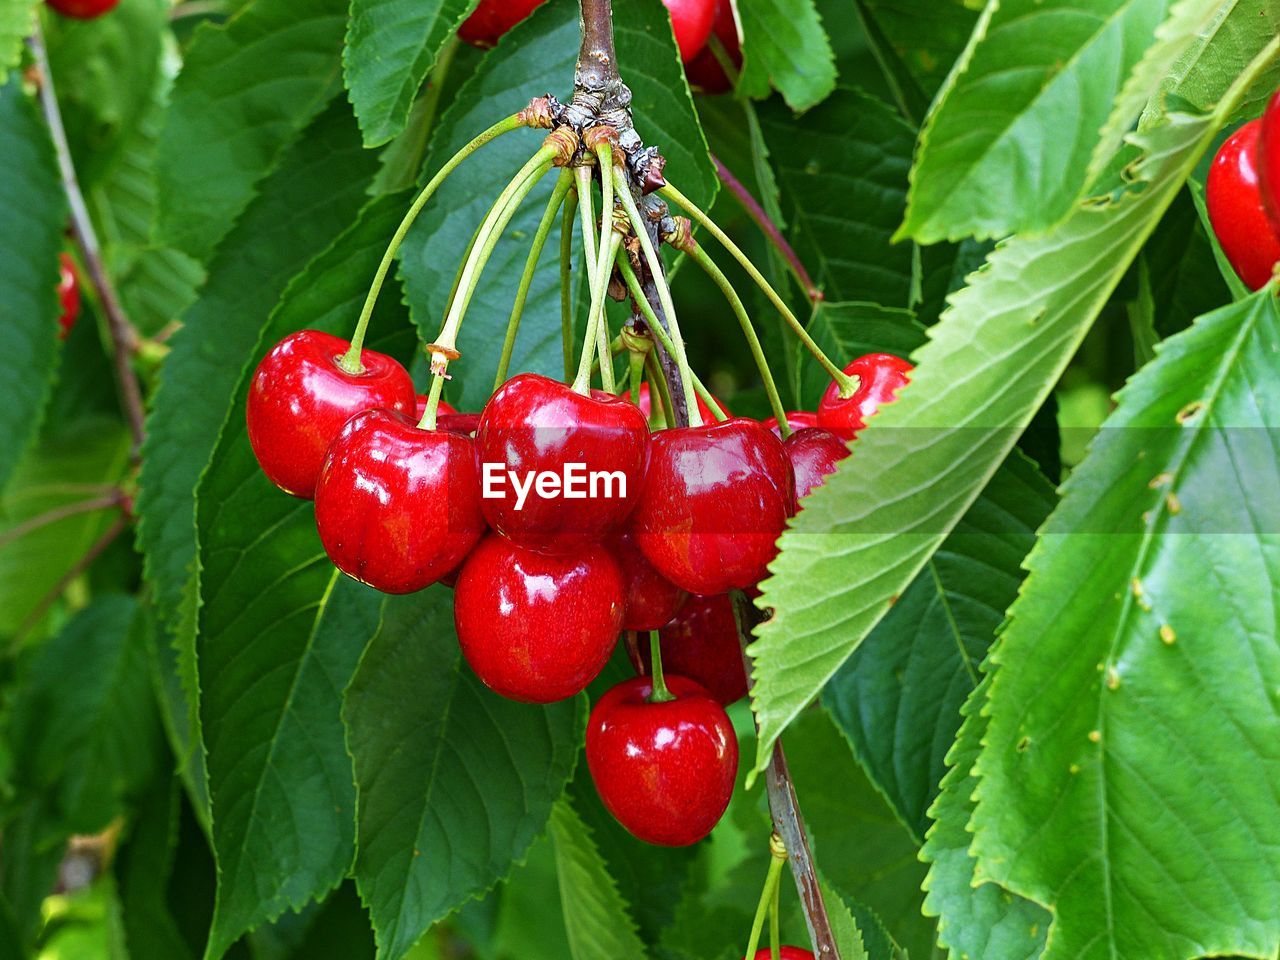 Cherries in season